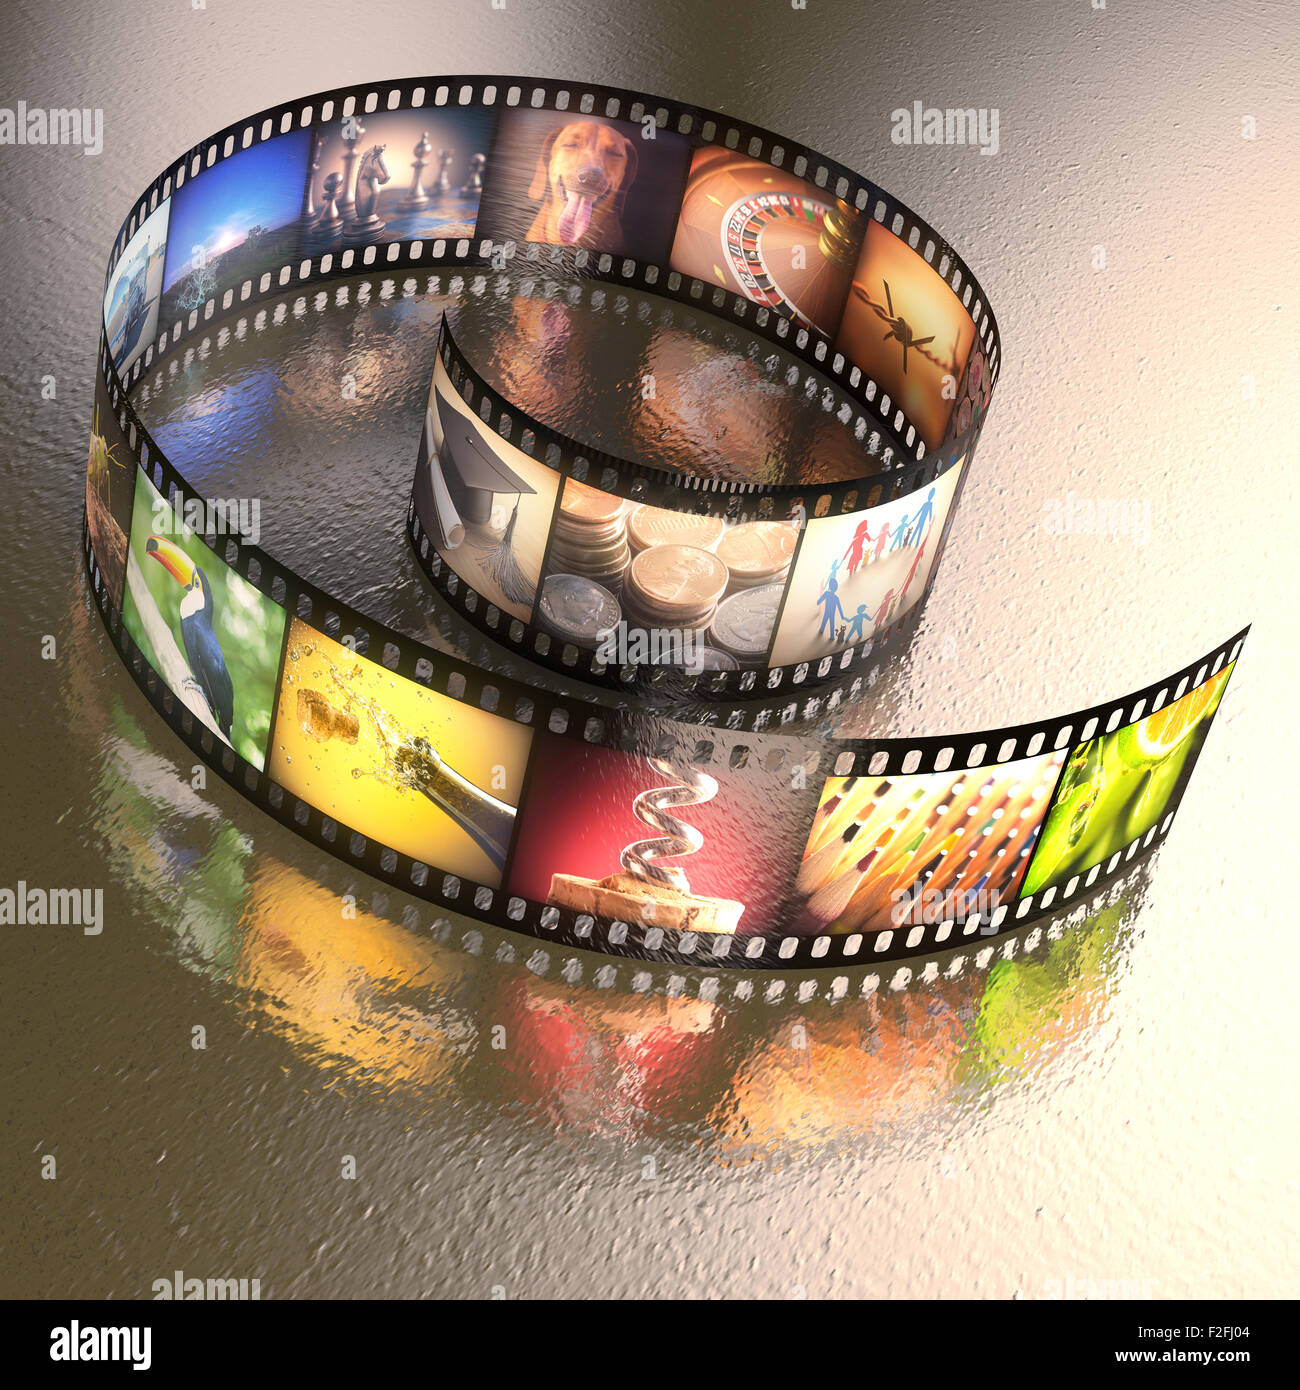 Fotografischer Film mit mehreren Fotos auf einer unebenen Tisch Metall. Clipping-Pfad enthalten. Stockfoto